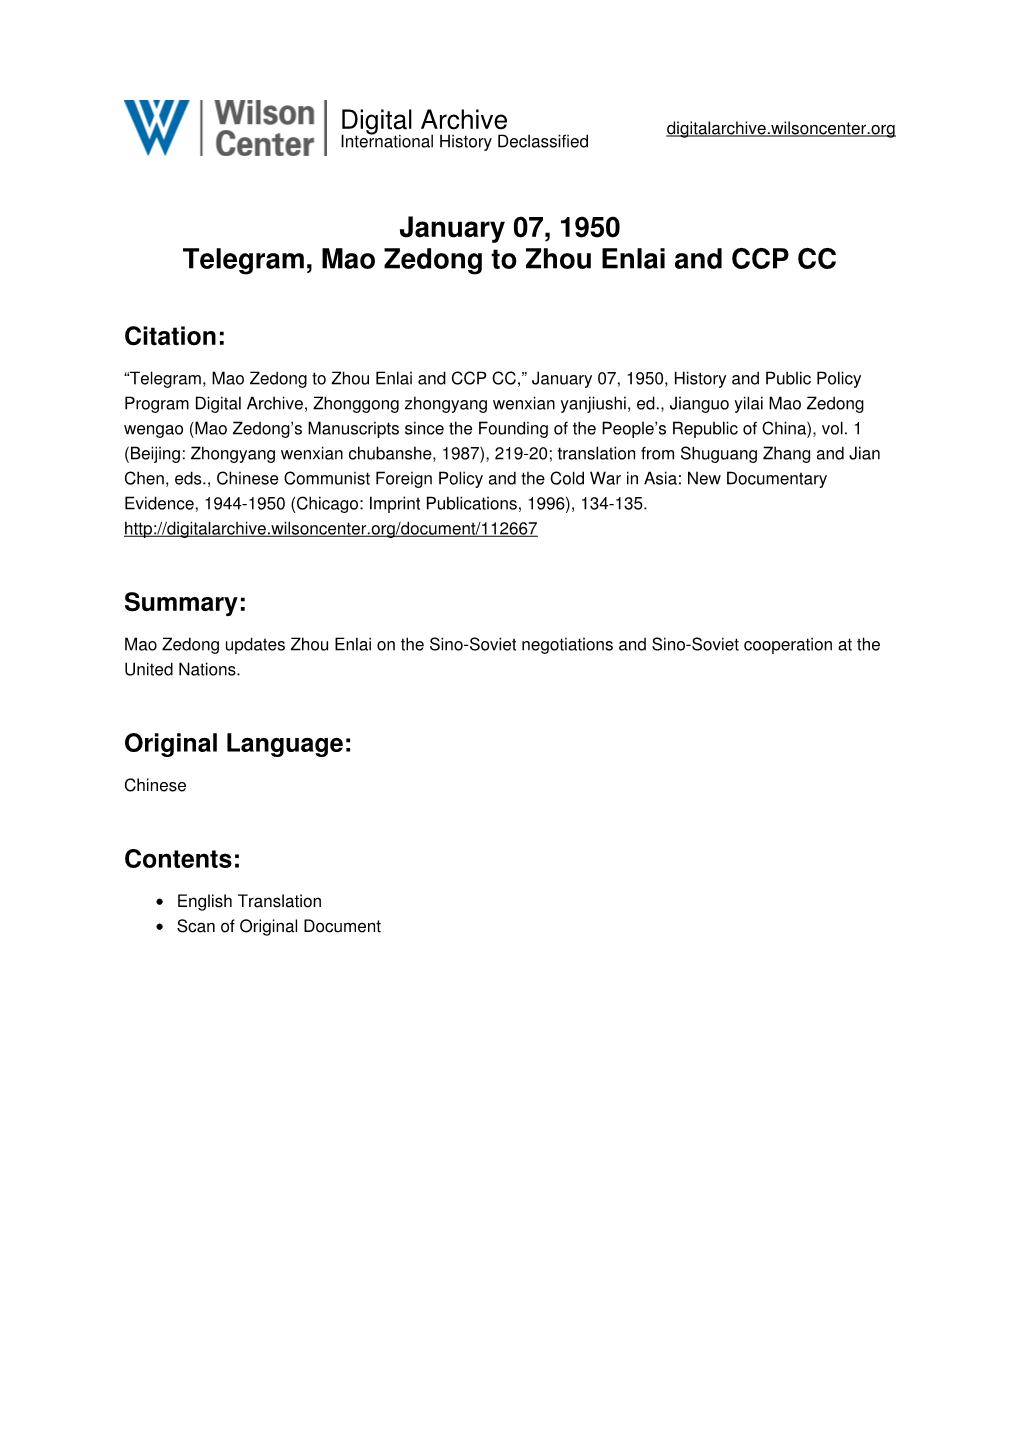 January 07, 1950 Telegram, Mao Zedong to Zhou Enlai and CCP CC